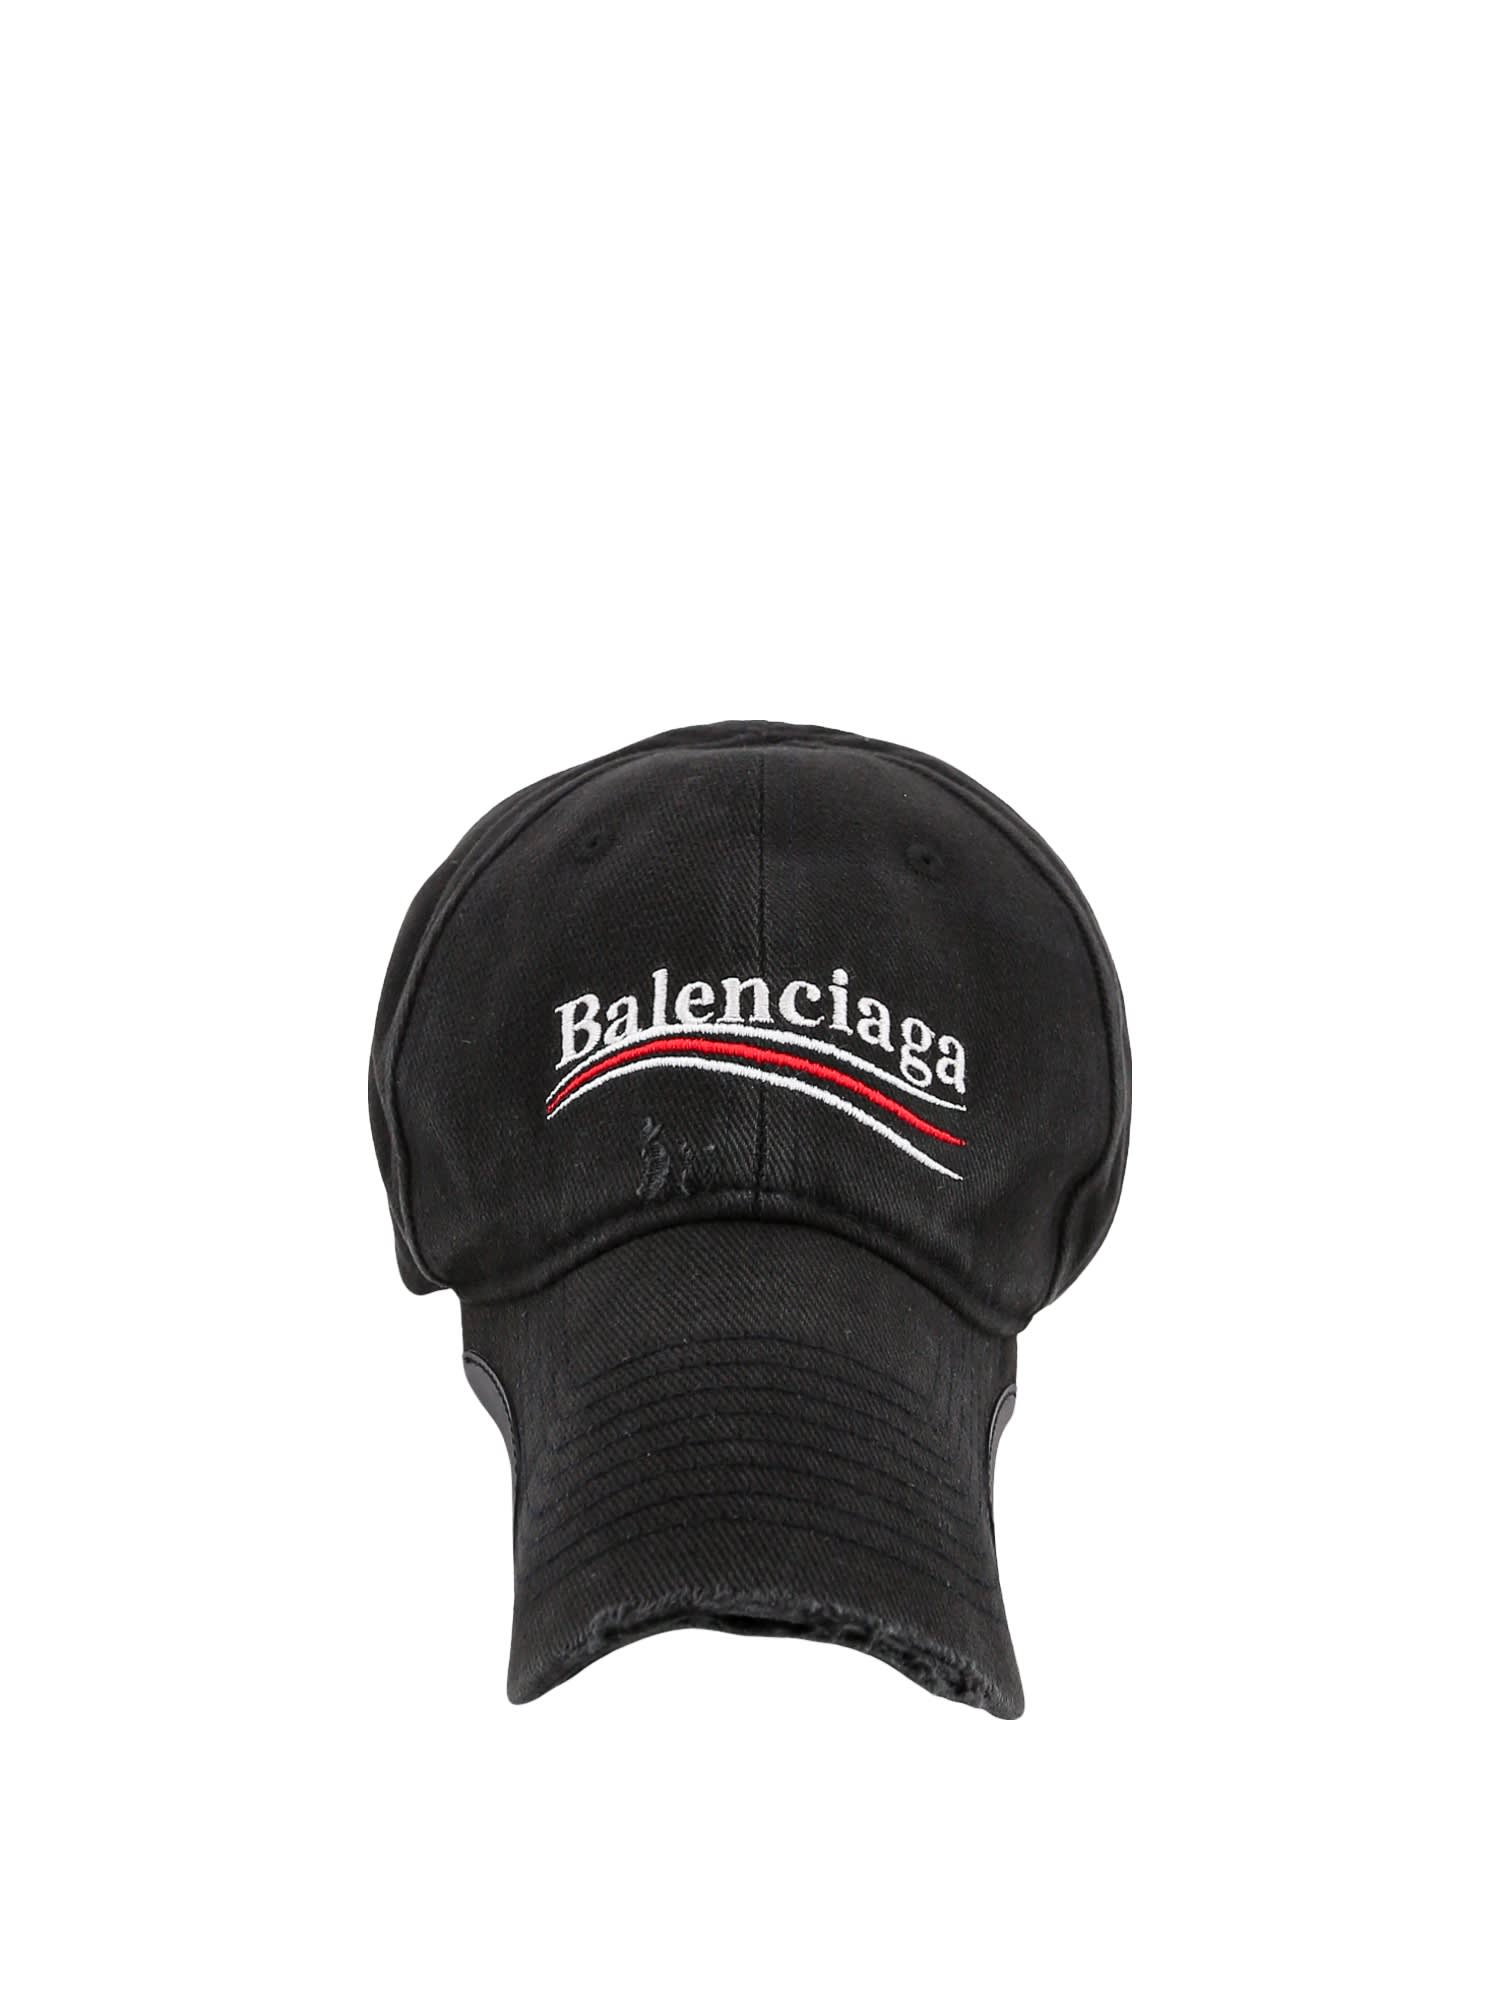 Balenciaga Political Campaign Cap In Black